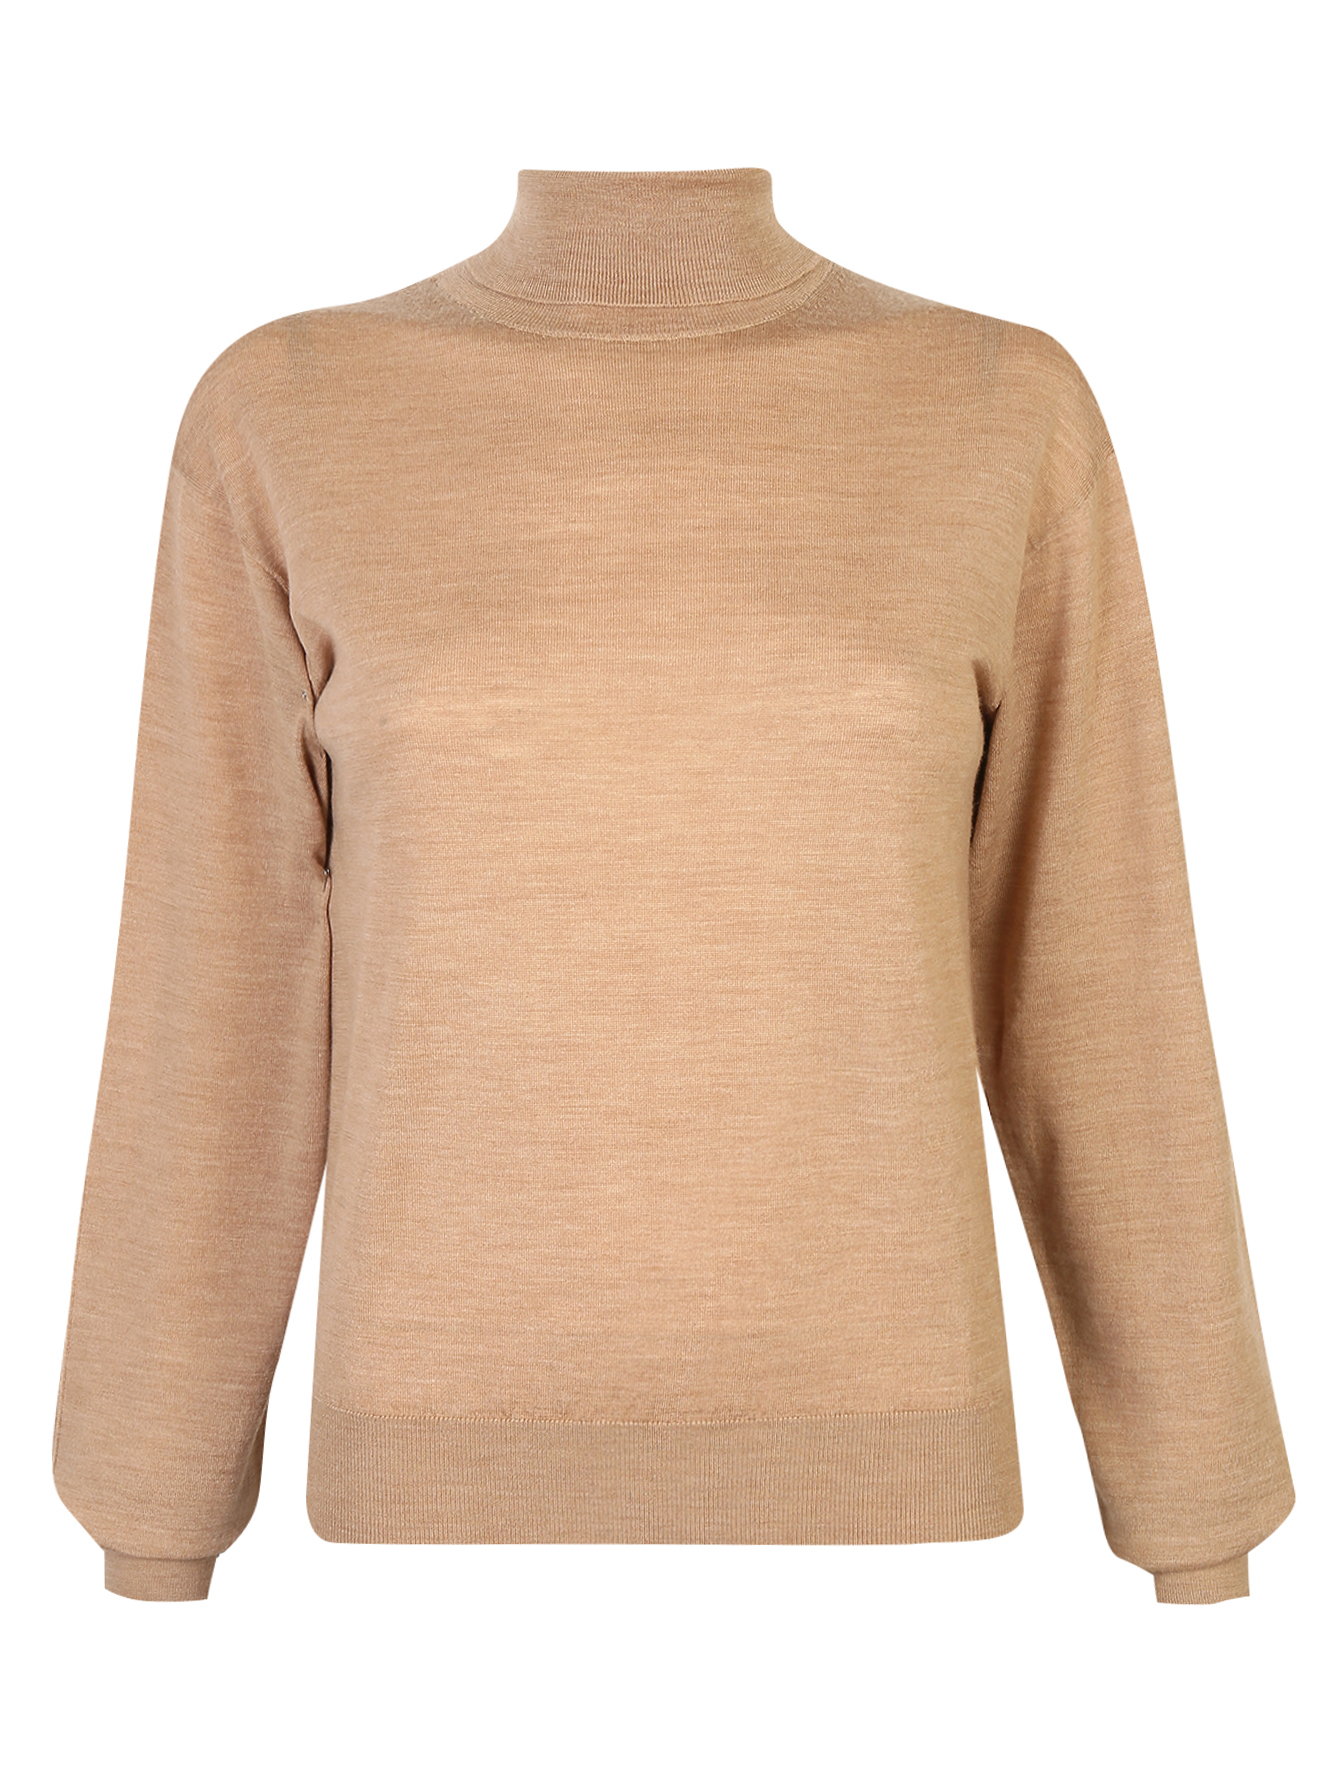 Водолазка свитер Боско женская 70% шерсть